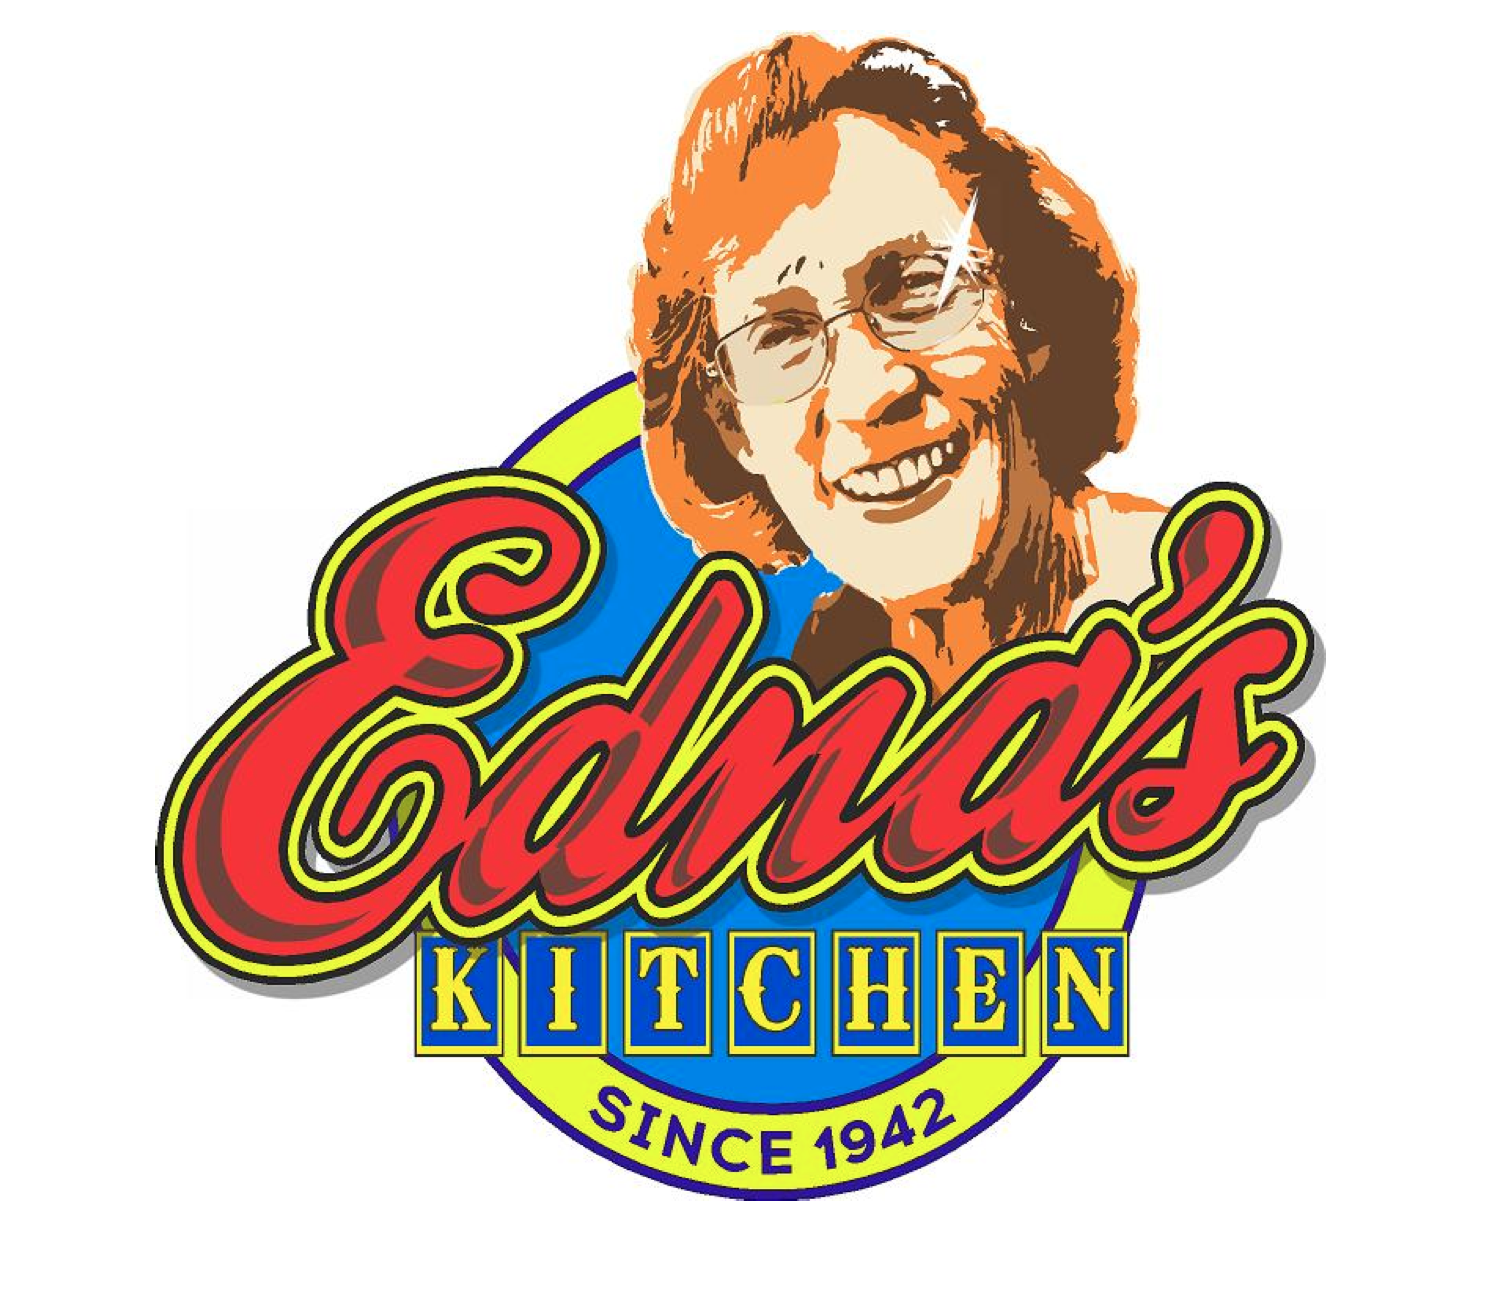 Edna's Kitchen